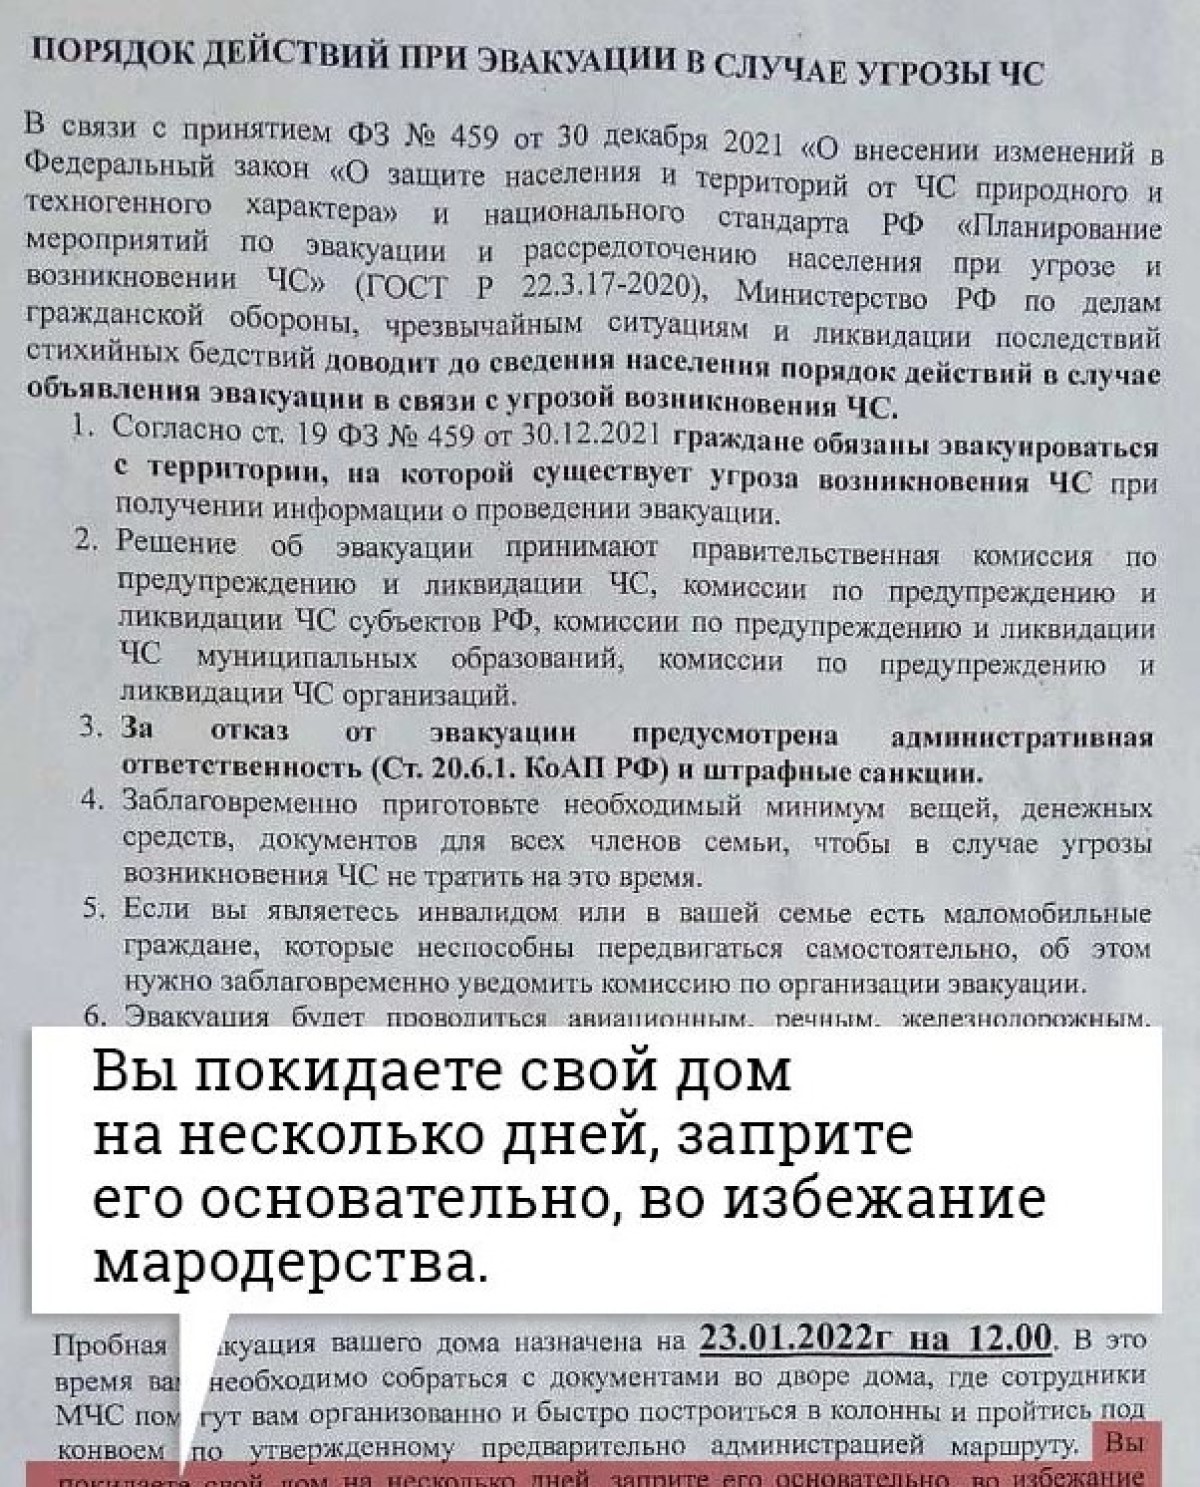 Челябинцев предупредили об обязательной эвакуации 23 января. МЧС заявило, что не имеет к этому отношения